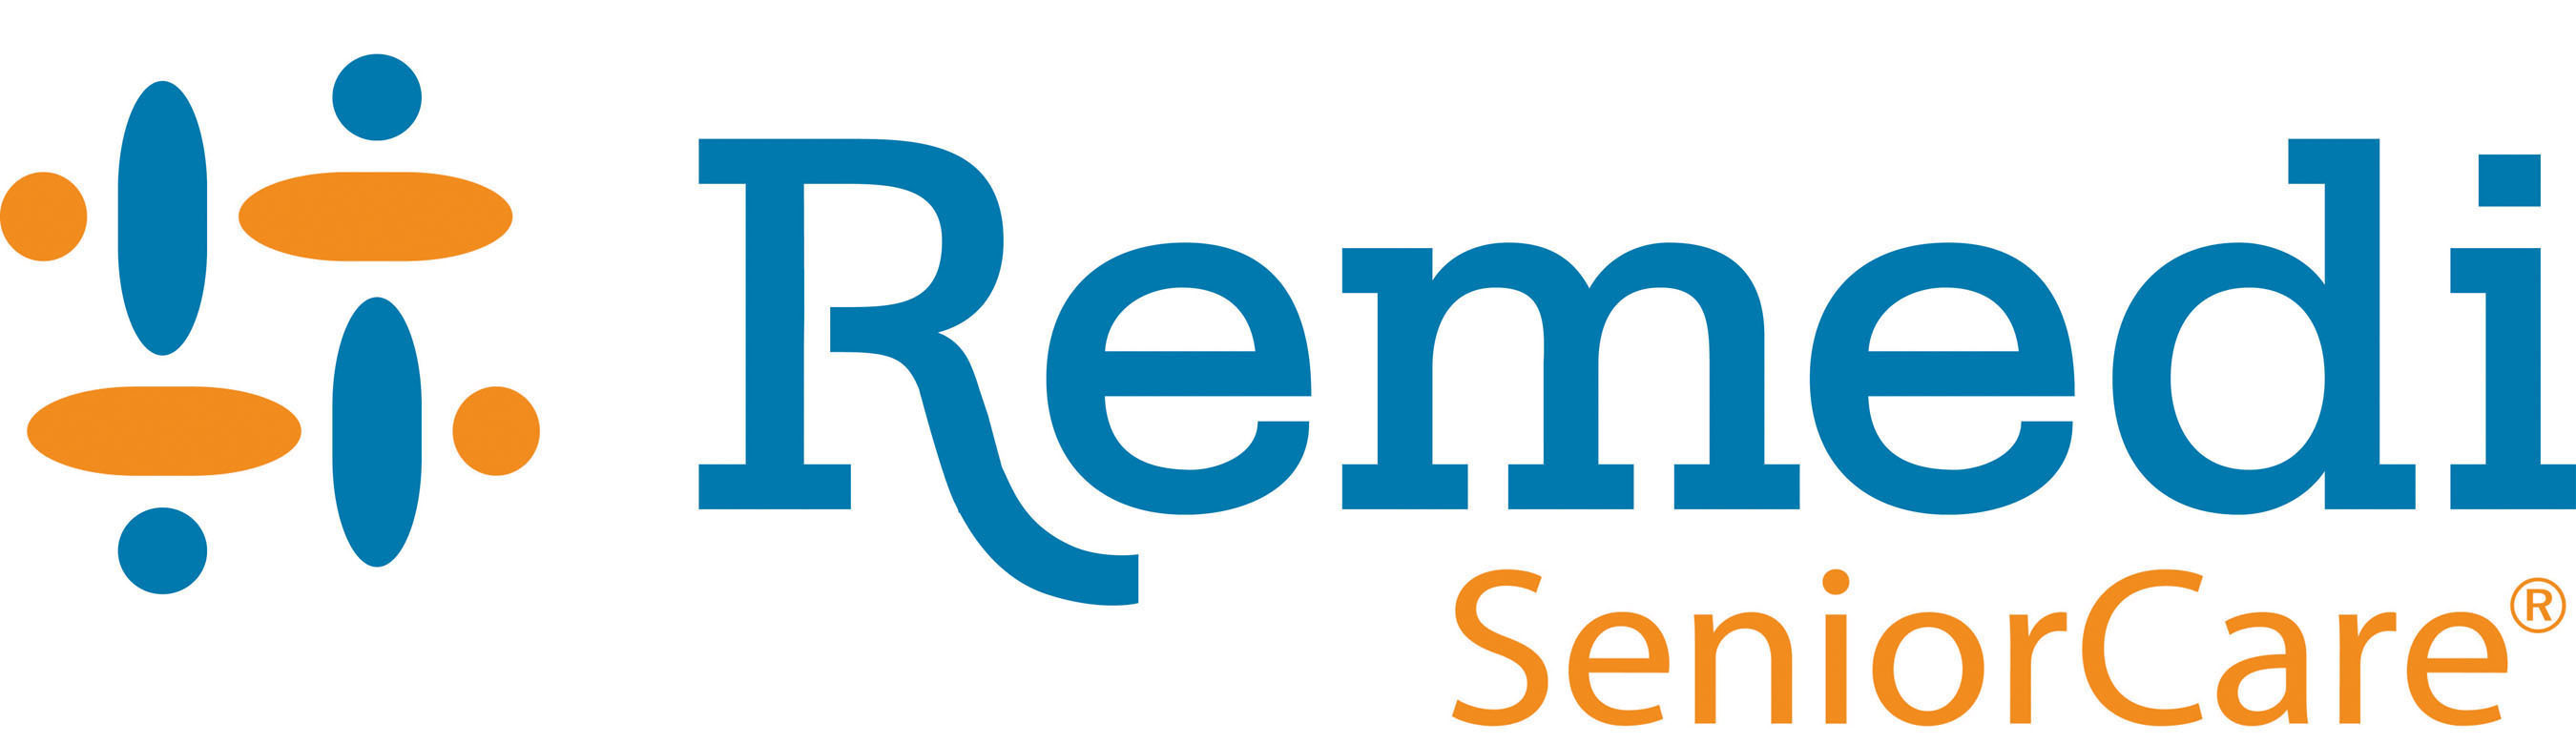 Remedi SeniorCare Pharmacy. (PRNewsFoto/Remedi SeniorCare) (PRNewsFoto/)